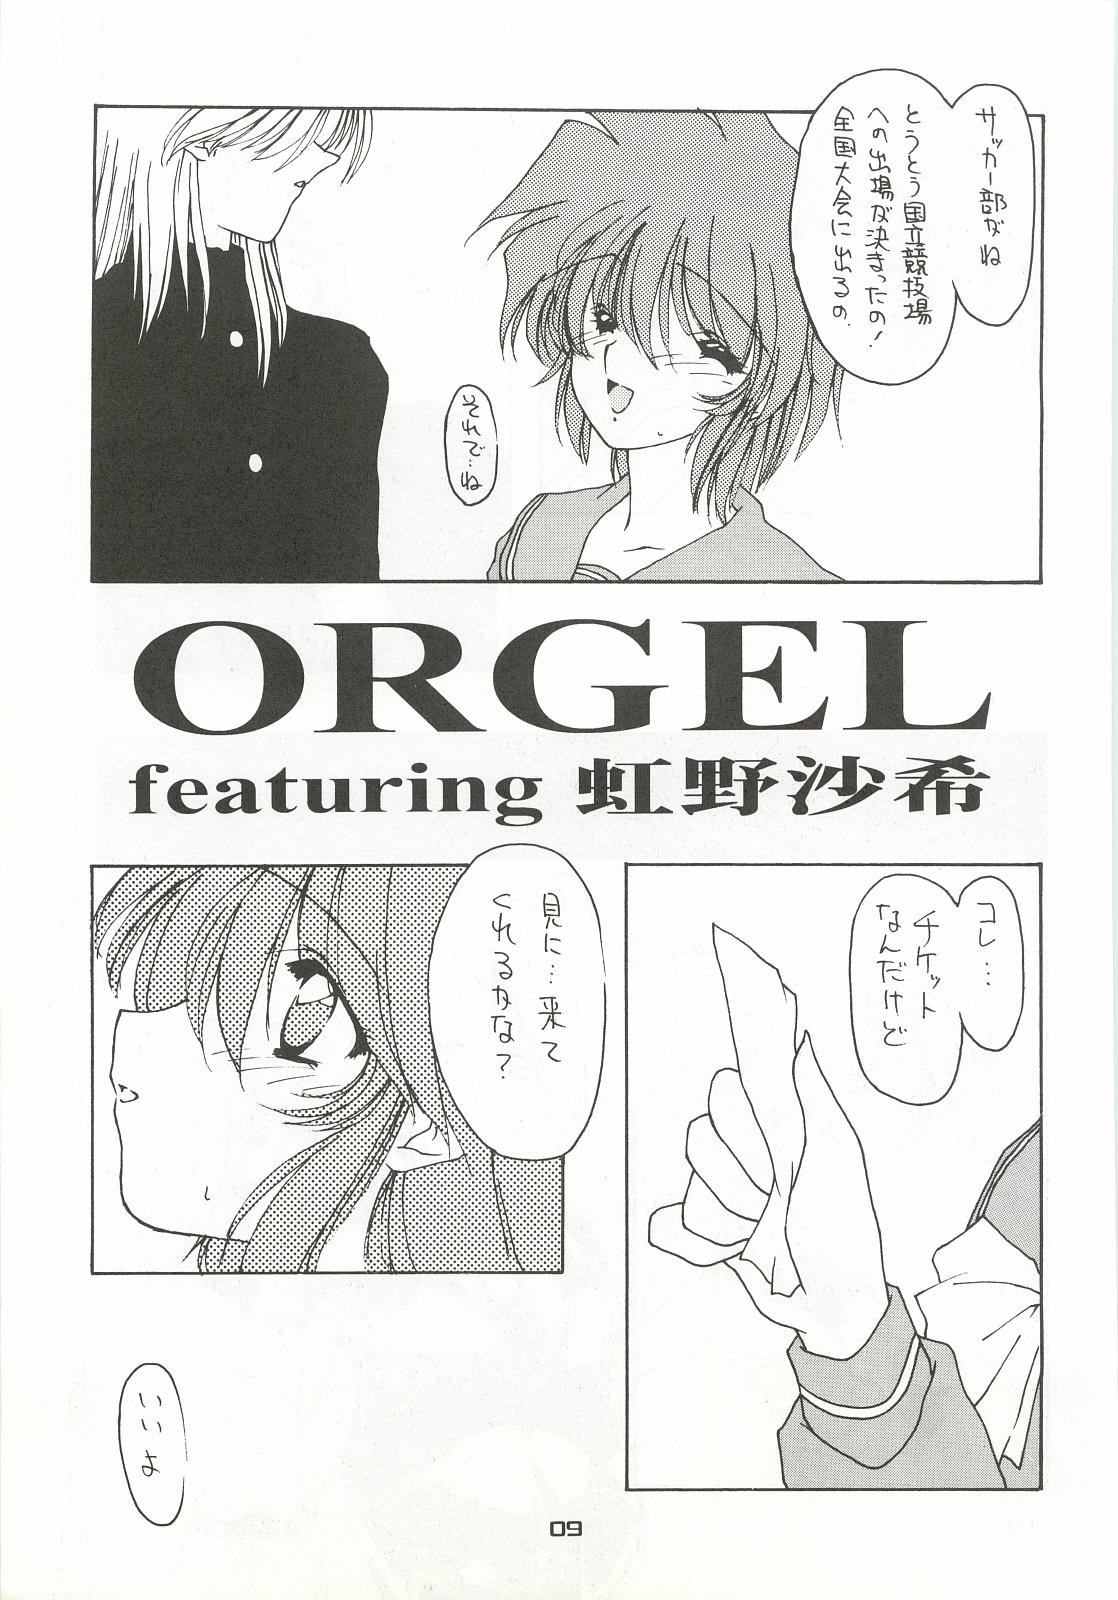 ORGEL 4 featuring Nijino Saki 7